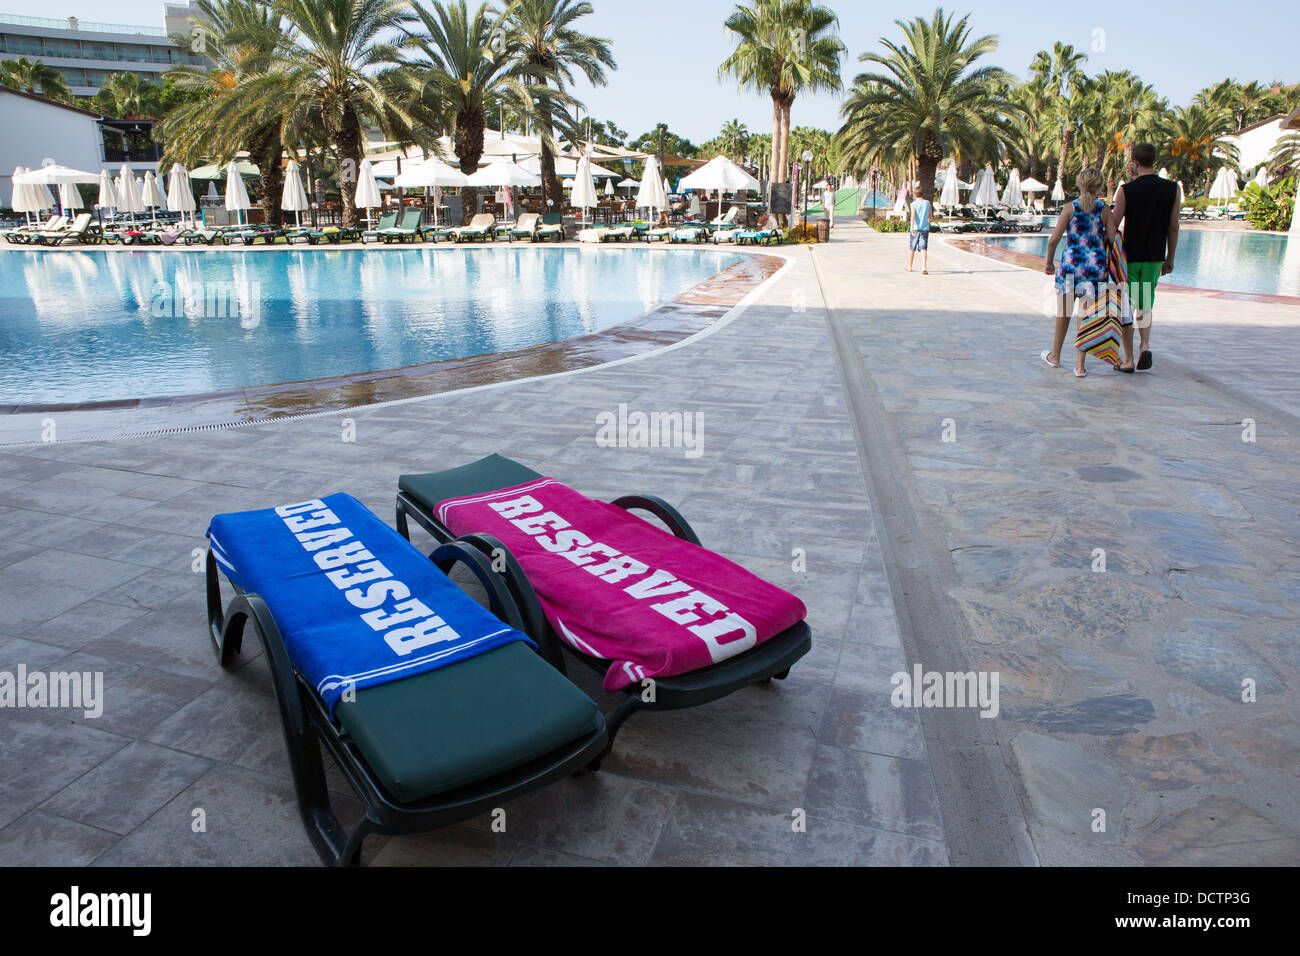 Zwei Sonnenliegen mit "reserviert" Handtücher neben einem Hotel-Schwimmbad Stockfoto